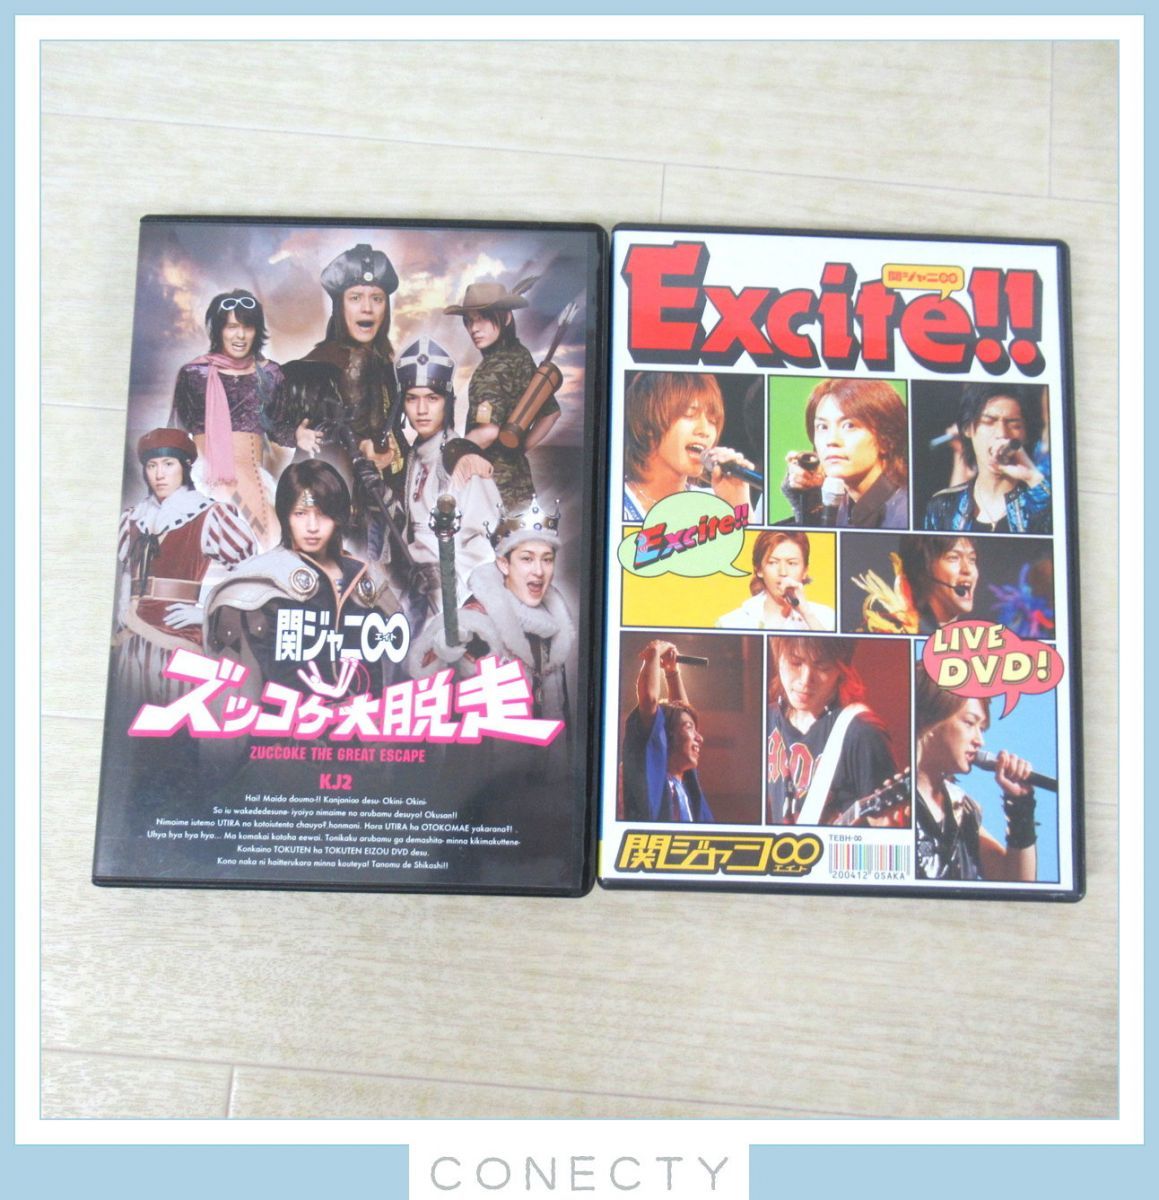 関ジャニ∞ DVD+DVD付きCD 6枚セット/FIGHT DVD/KJ2 ズッコケ大脱走DVD